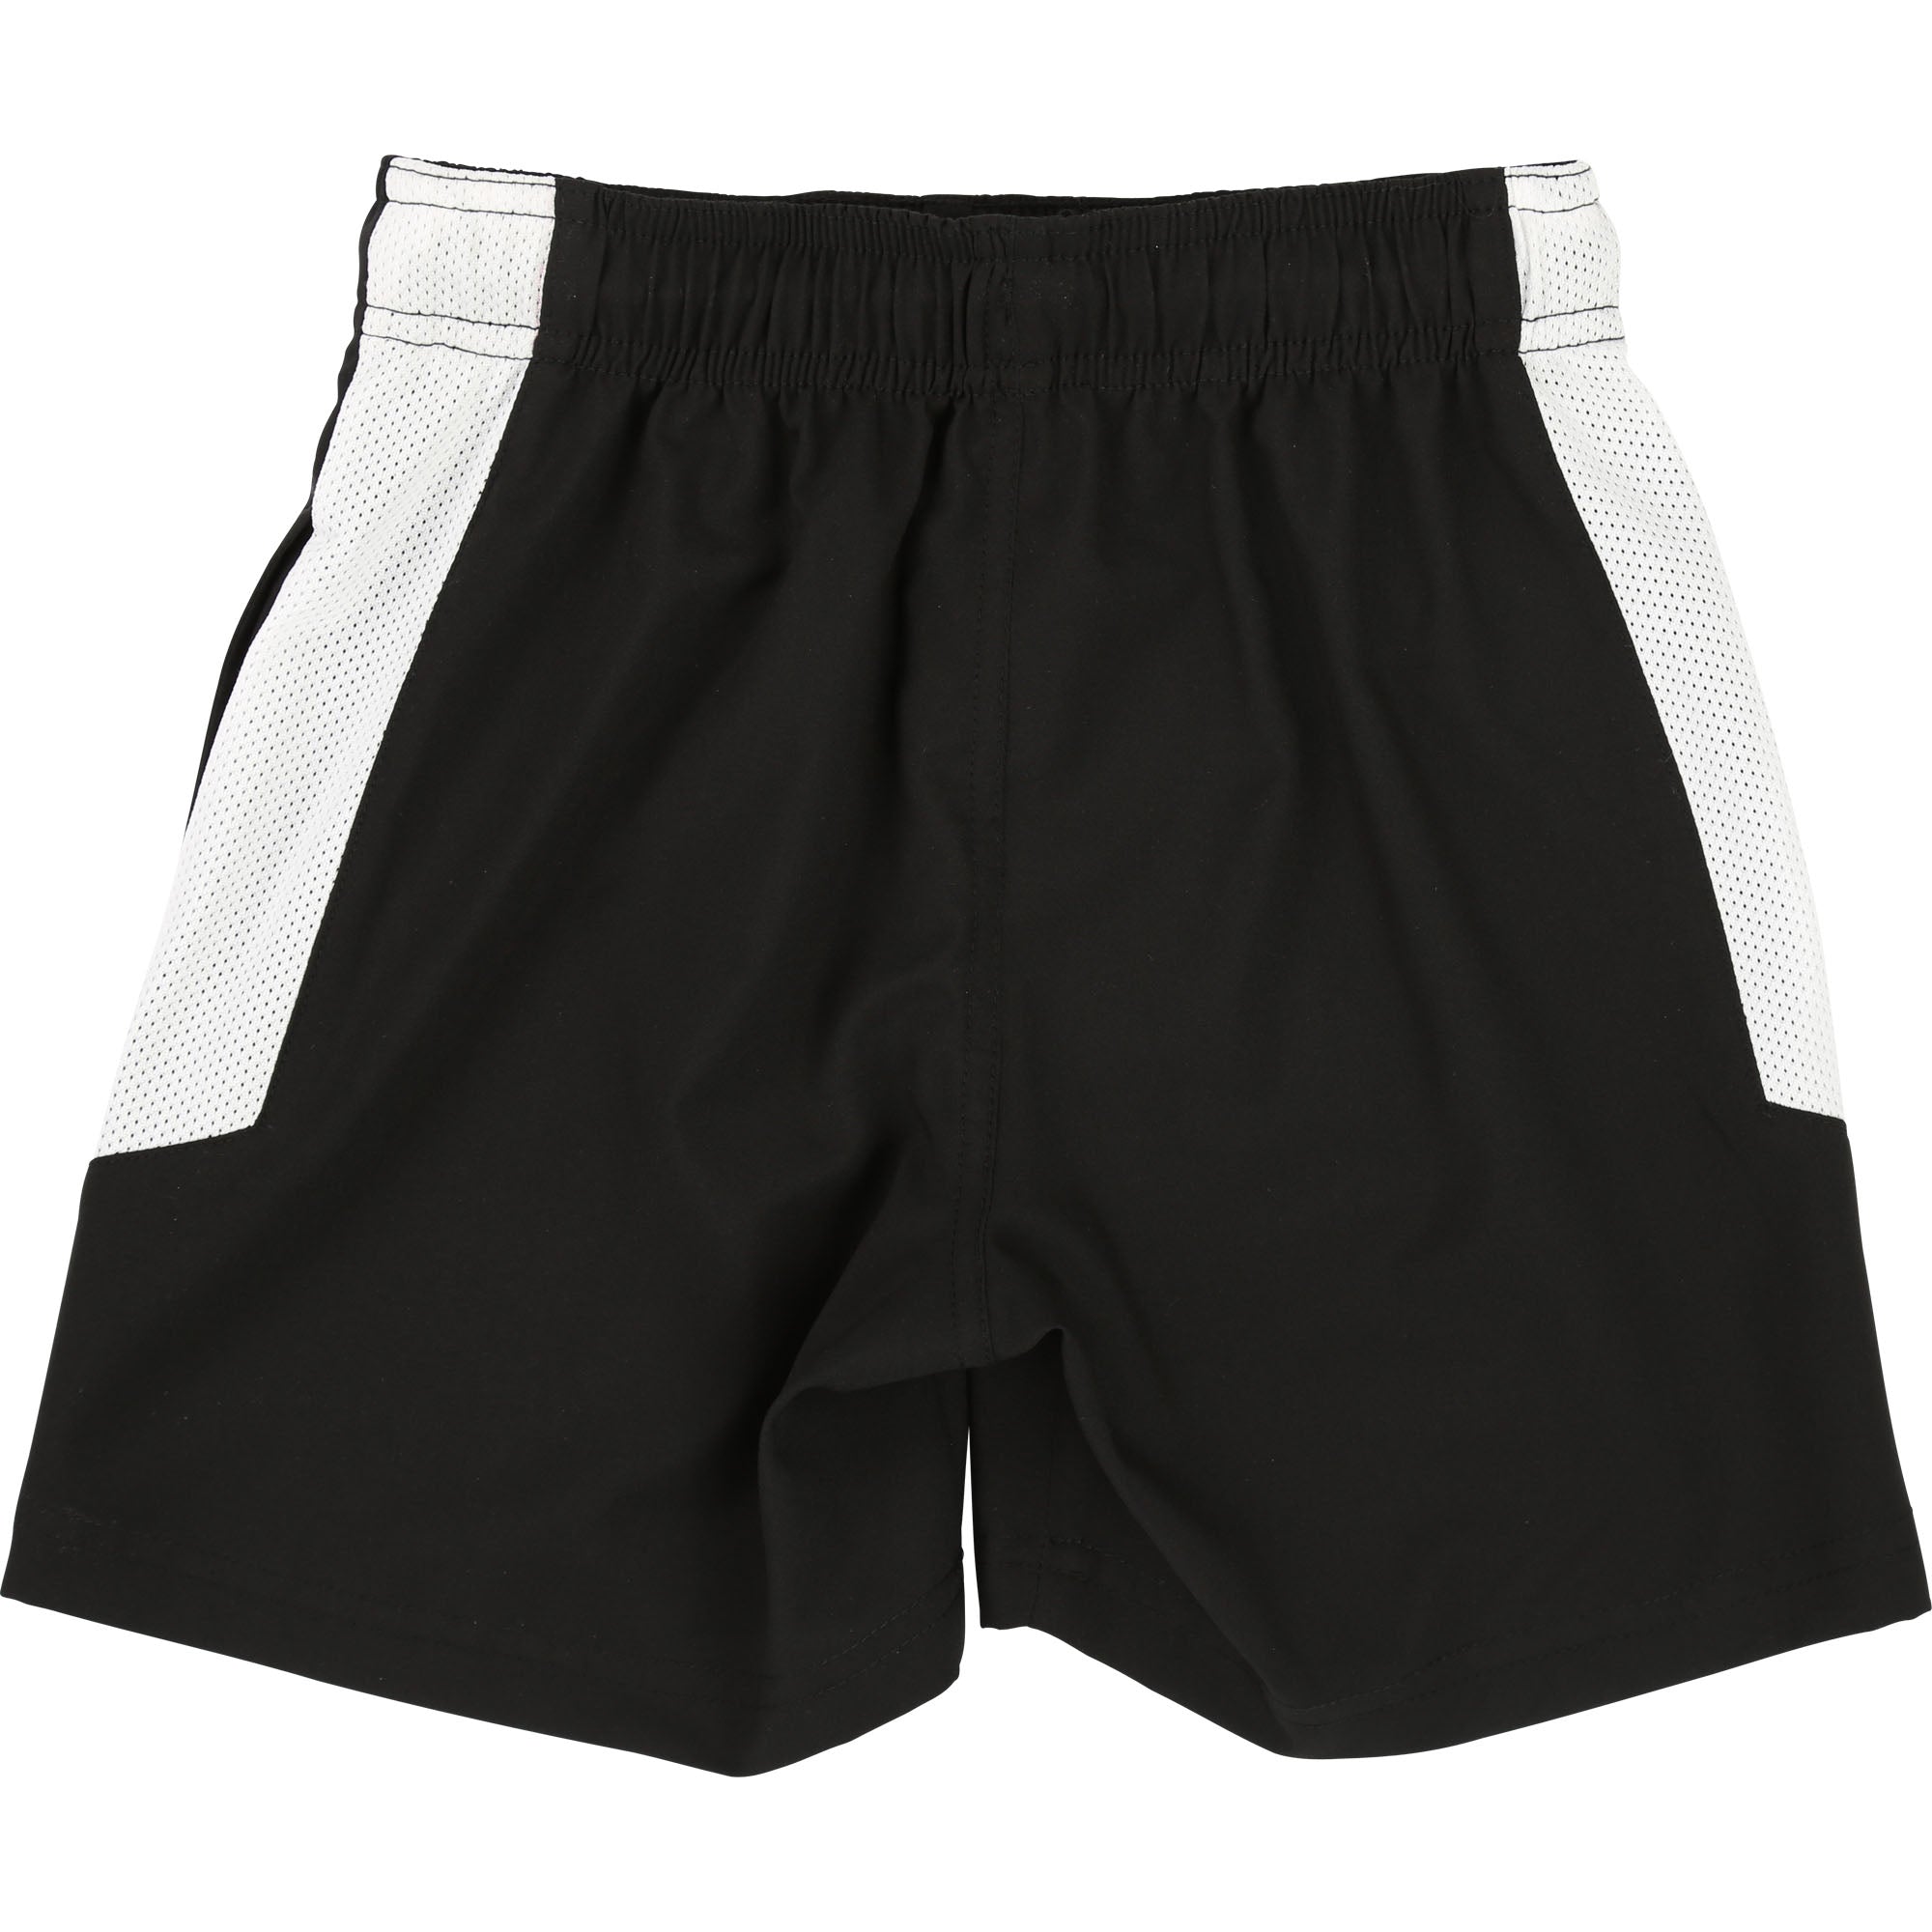 Boys Black & White Shorts